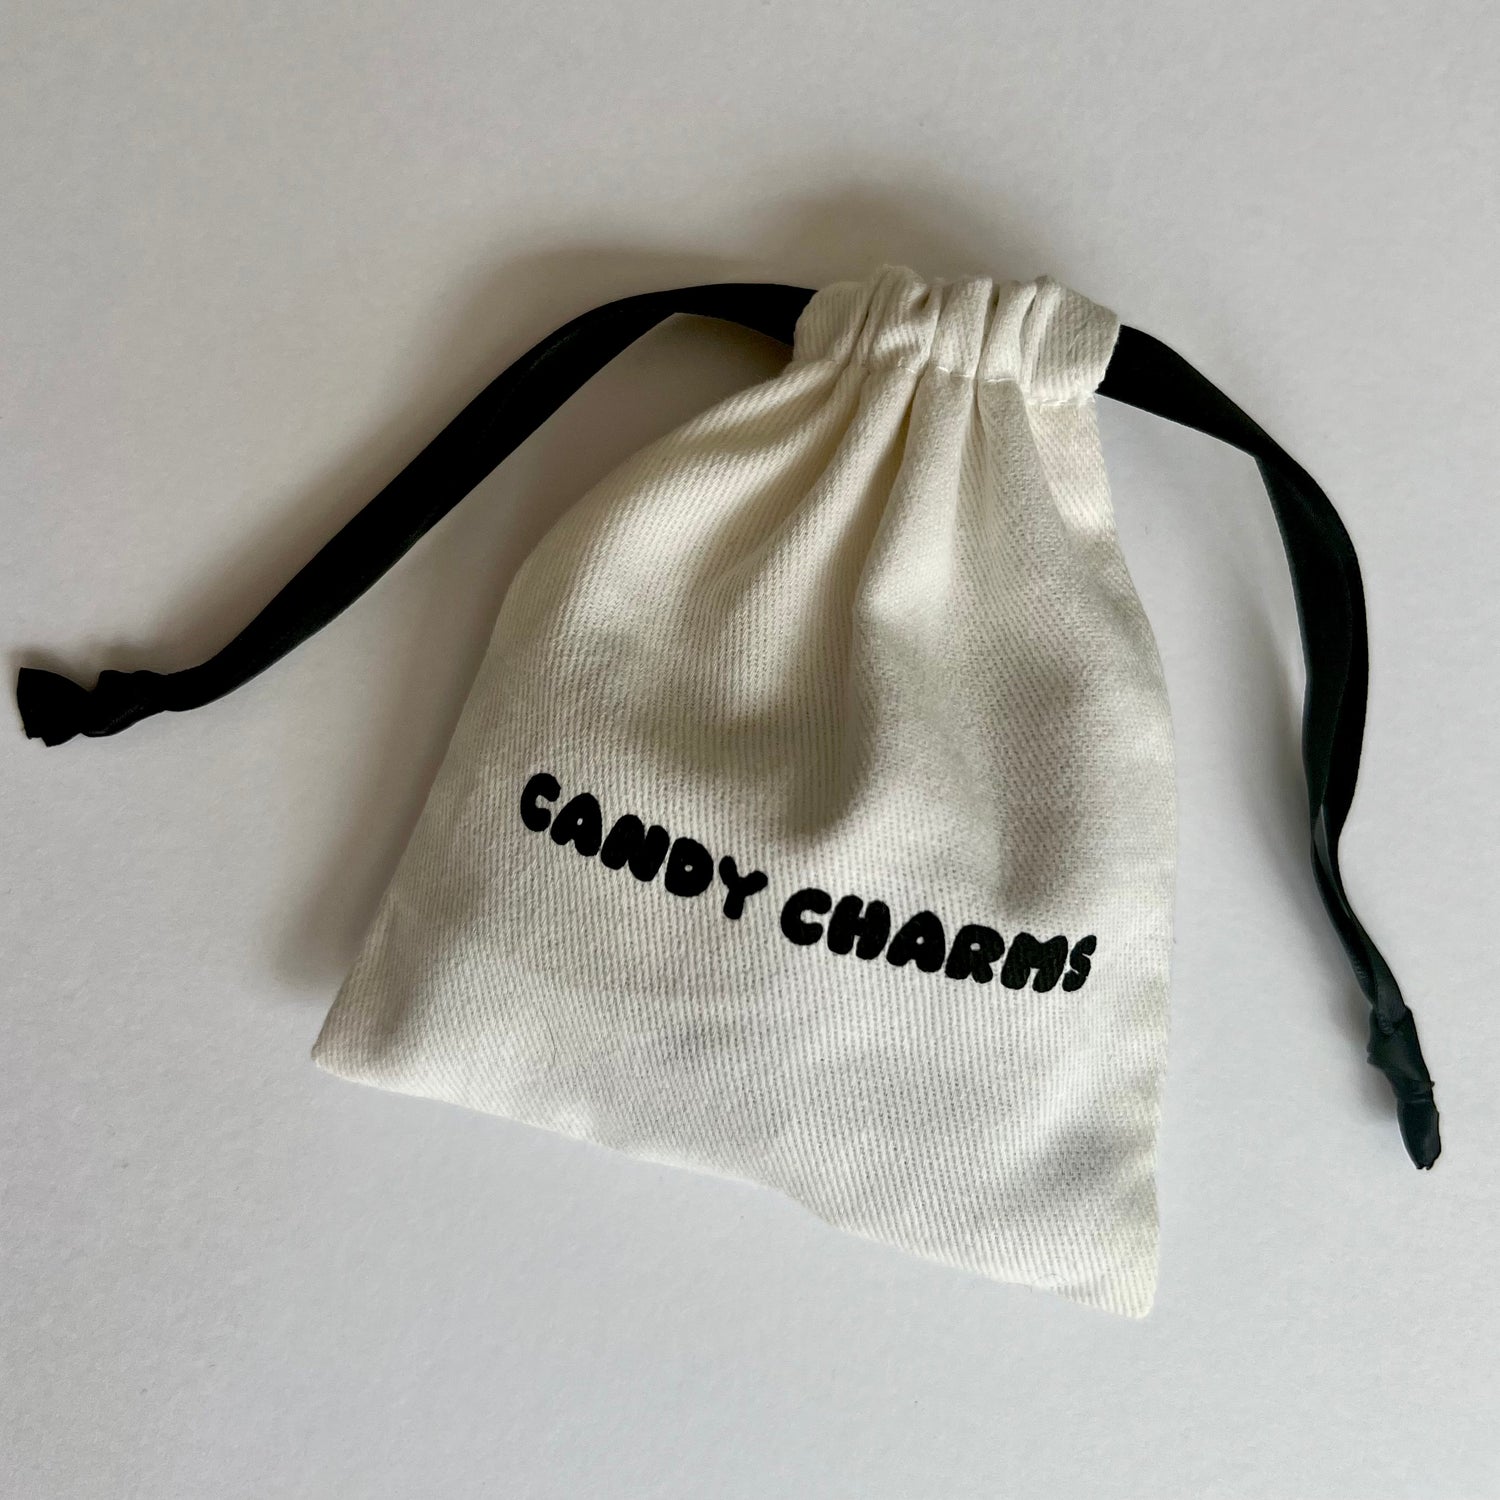 Charms Bag Small